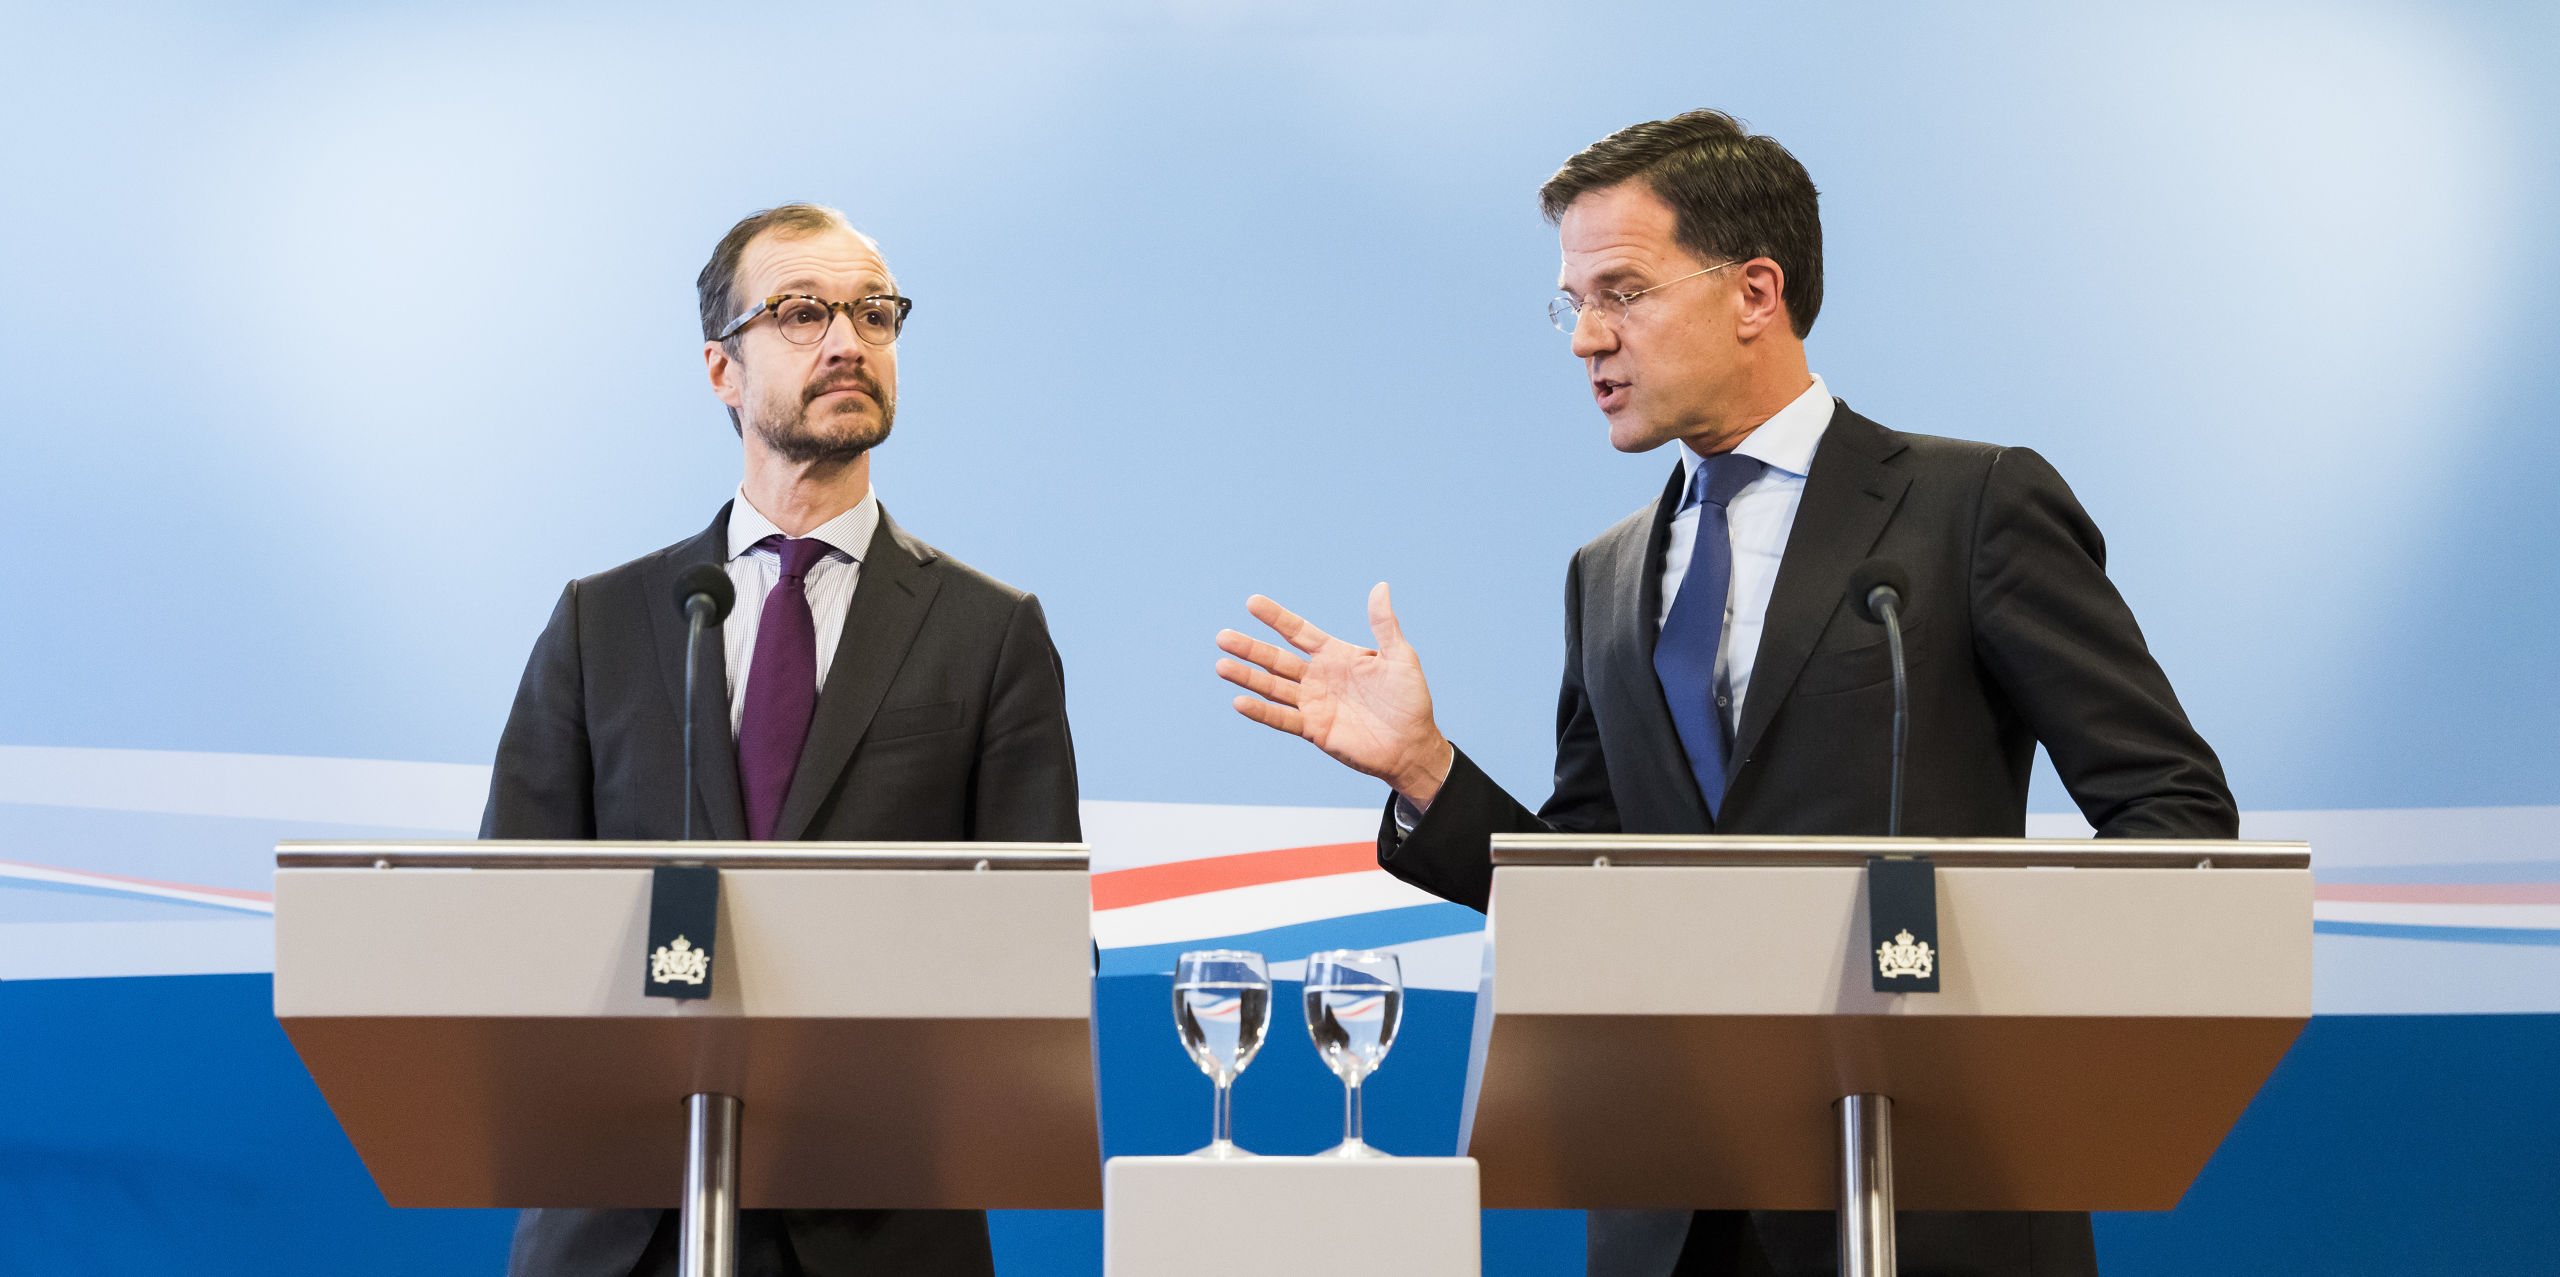 Premier Mark Rutte en minister Eric Wiebes van Economische Zaken en Klimaat geven een reactie na afloop van de presentatie van de planbureaus over de doorrekening van het ontwerp-klimaatakkoord.